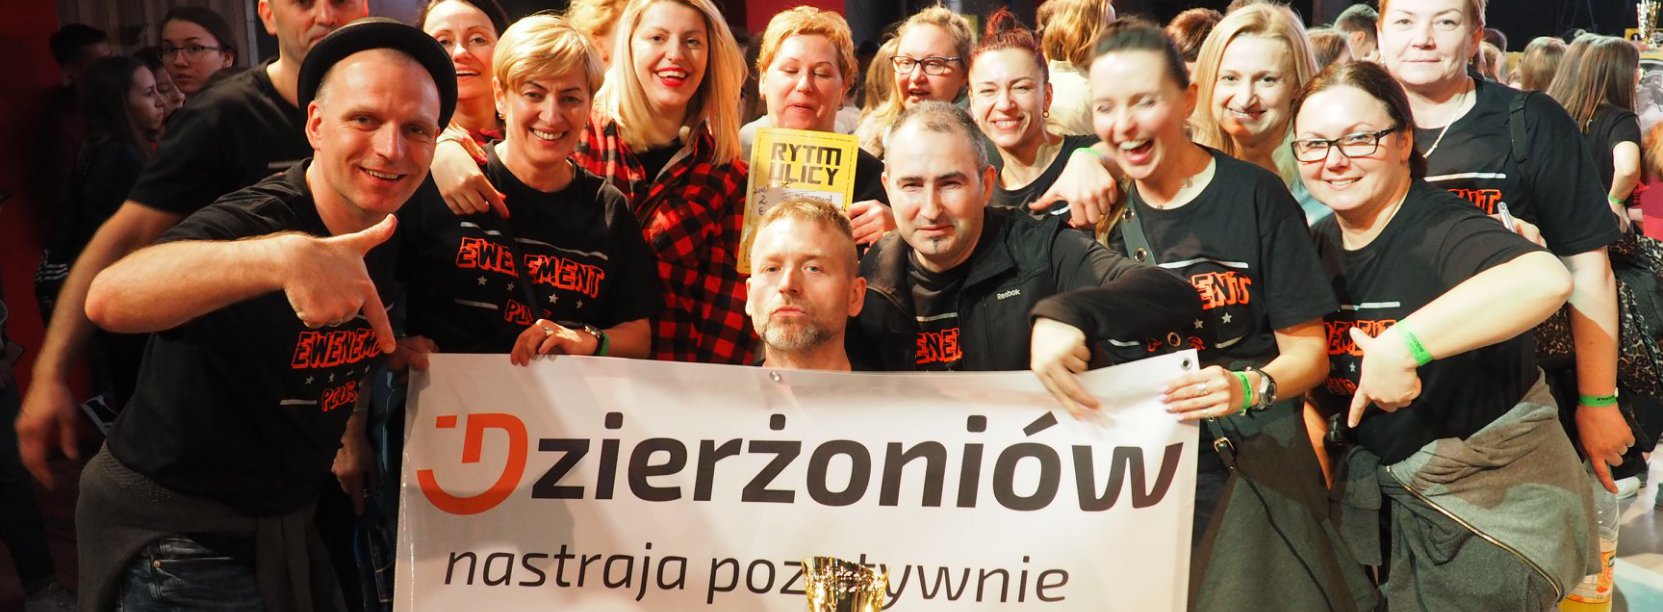 Usmiechnięta grupa trzymająca baner z napisem Dzierżoniów nastraja pozytywnie